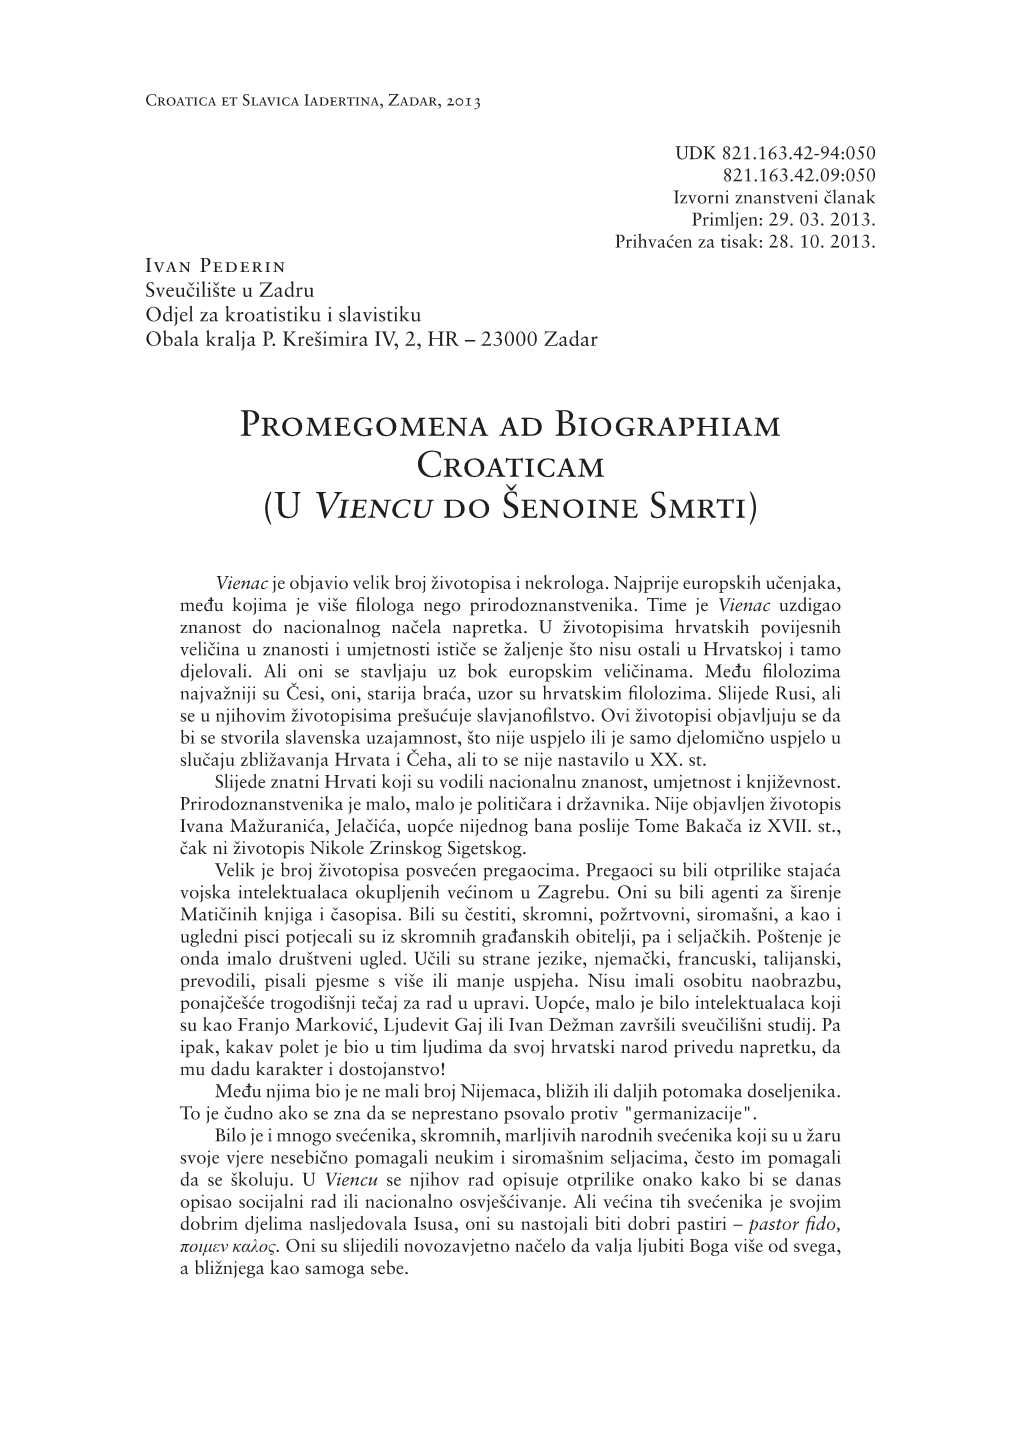 Promegomena Ad Biographiam Croaticam (U Viencu Do Šenoine Smrti)